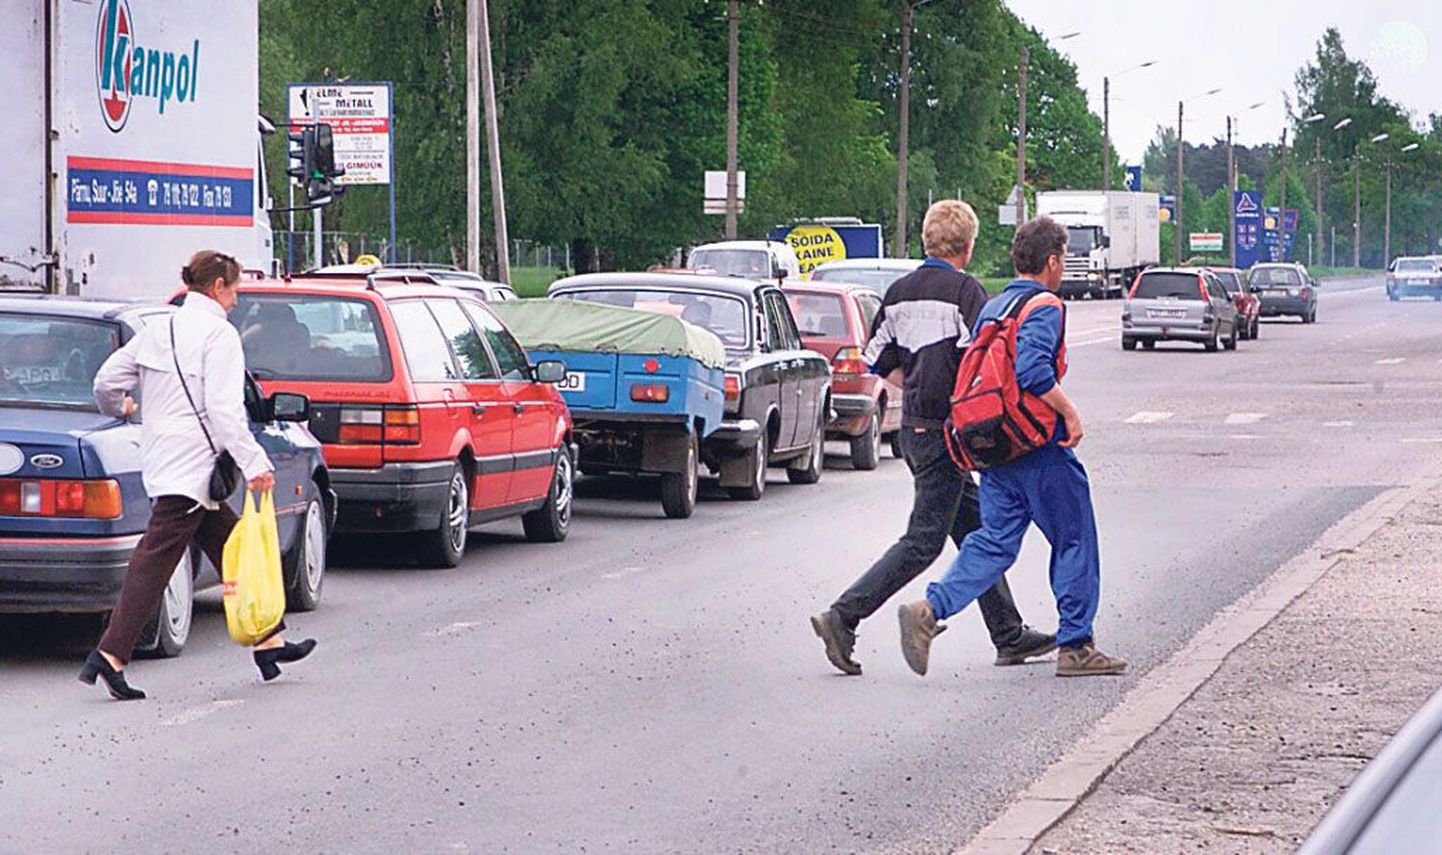 Isegi reguleeritaval ristmikul ei viitsi jalakäijad vöötrajani kõndida, vaid tormavad üle tee autode vahelt.